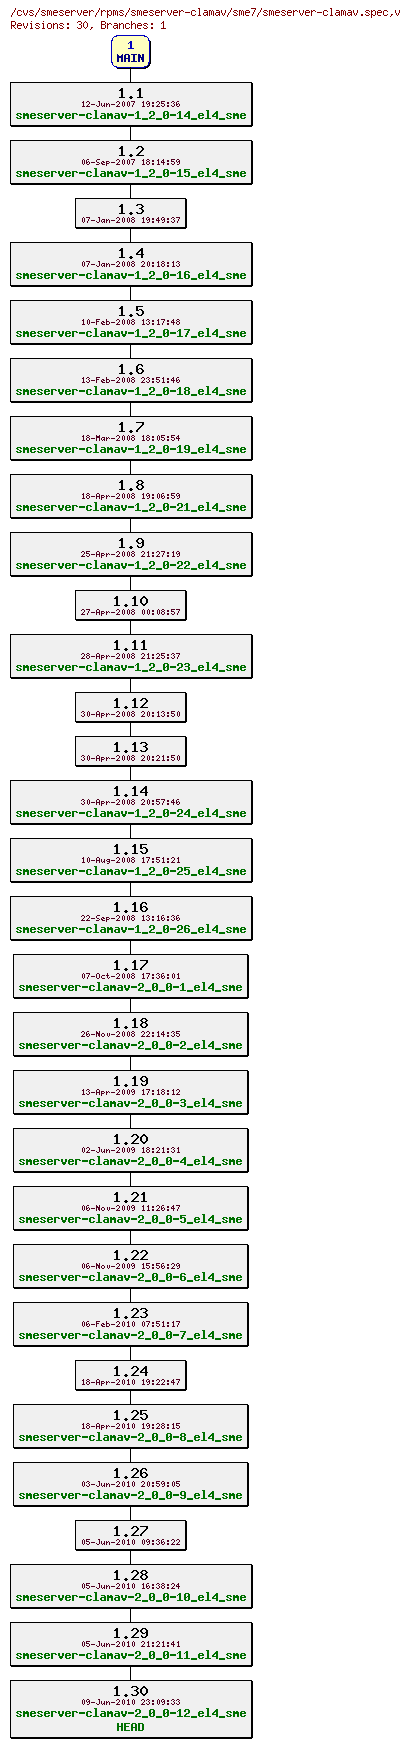 Revisions of rpms/smeserver-clamav/sme7/smeserver-clamav.spec